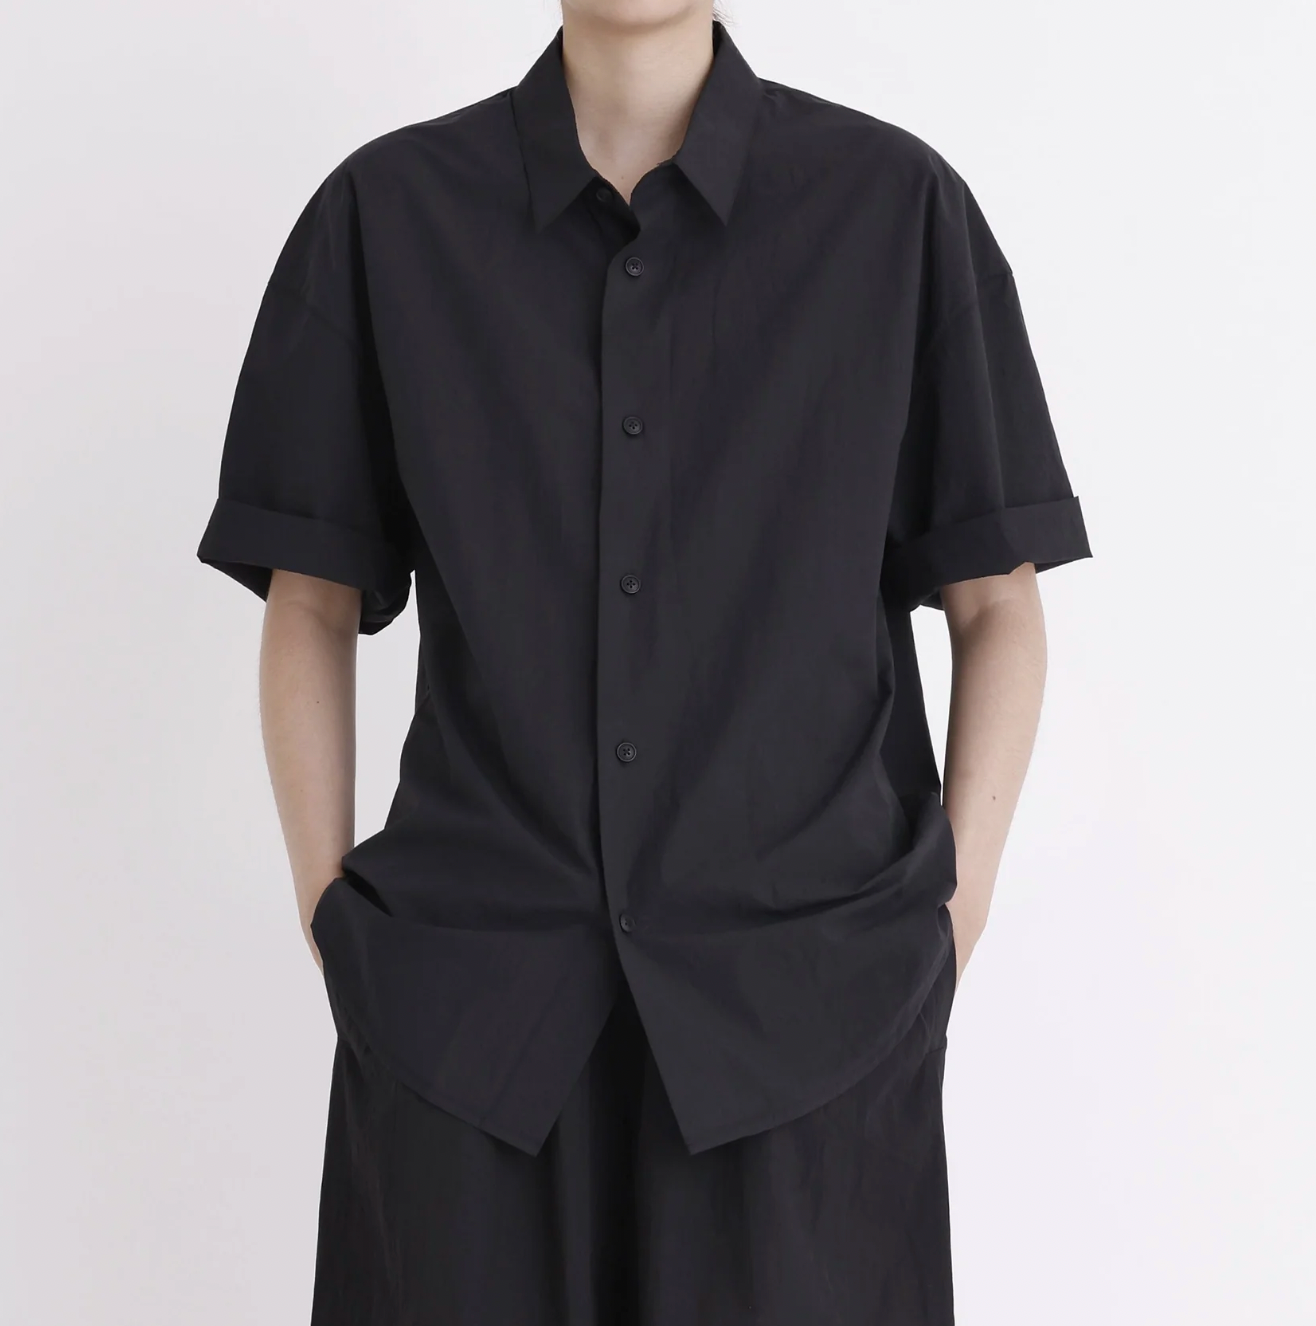 Product Image for Oversized Short Sleeve Shirt, Black